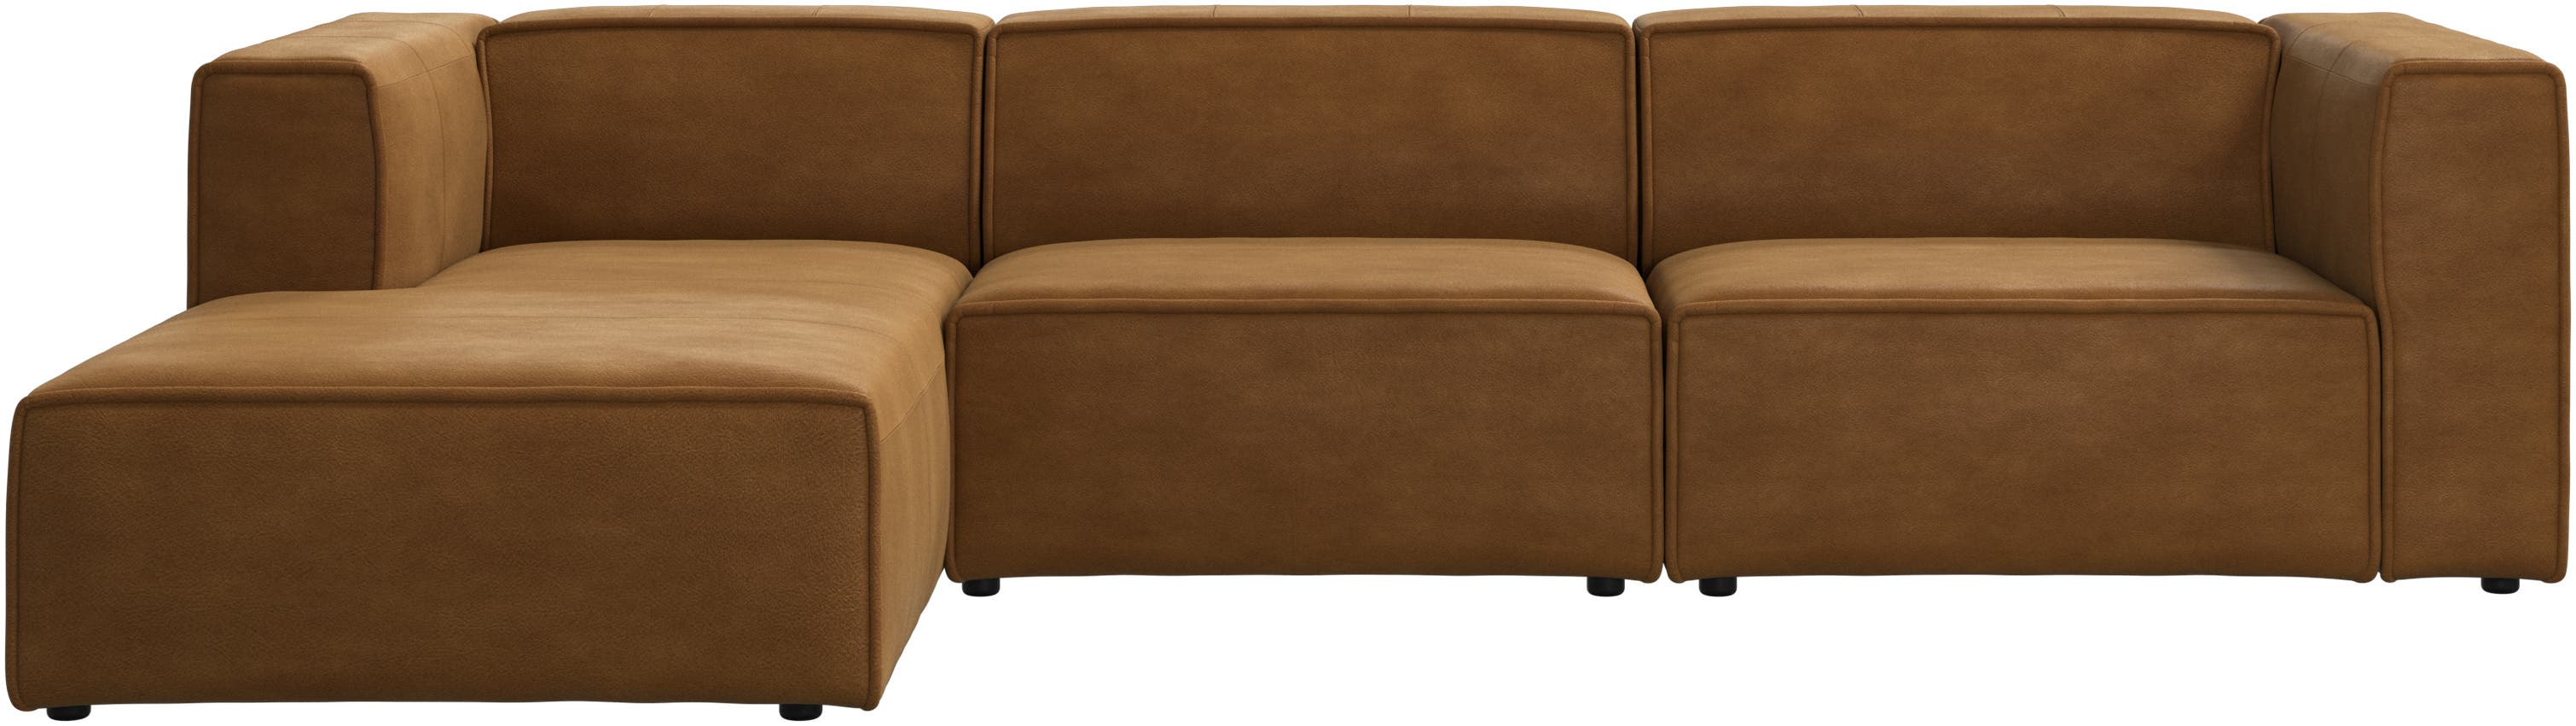 Carmo sofa med hvilemodul